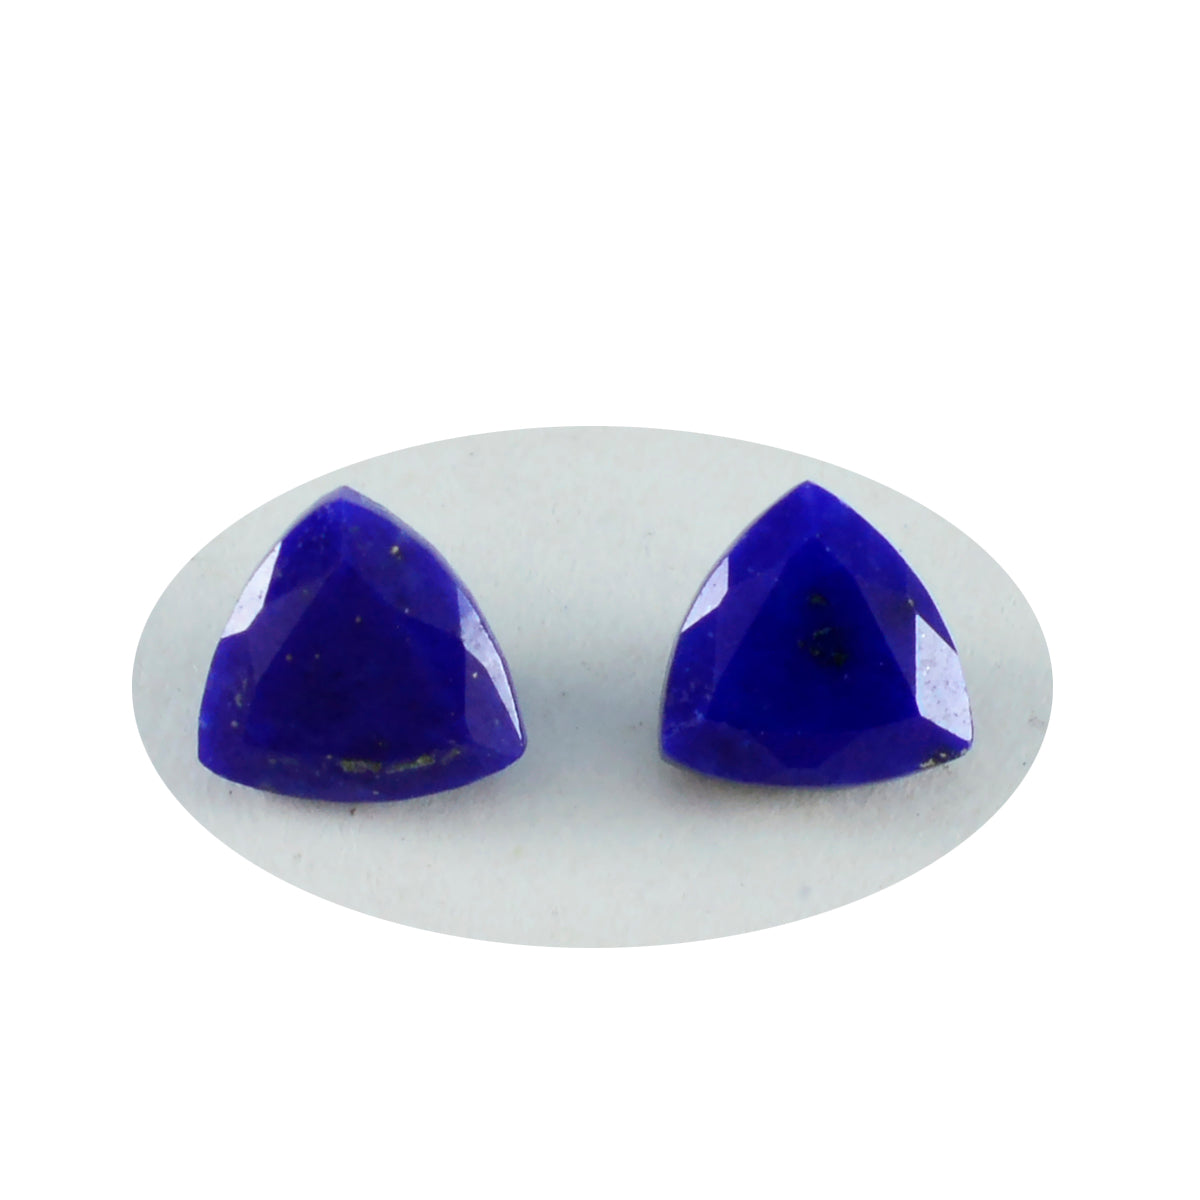 Riyogems 1 Stück echter blauer Lapislazuli, facettiert, 10 x 10 mm, Billionenform, ein hochwertiger Edelstein